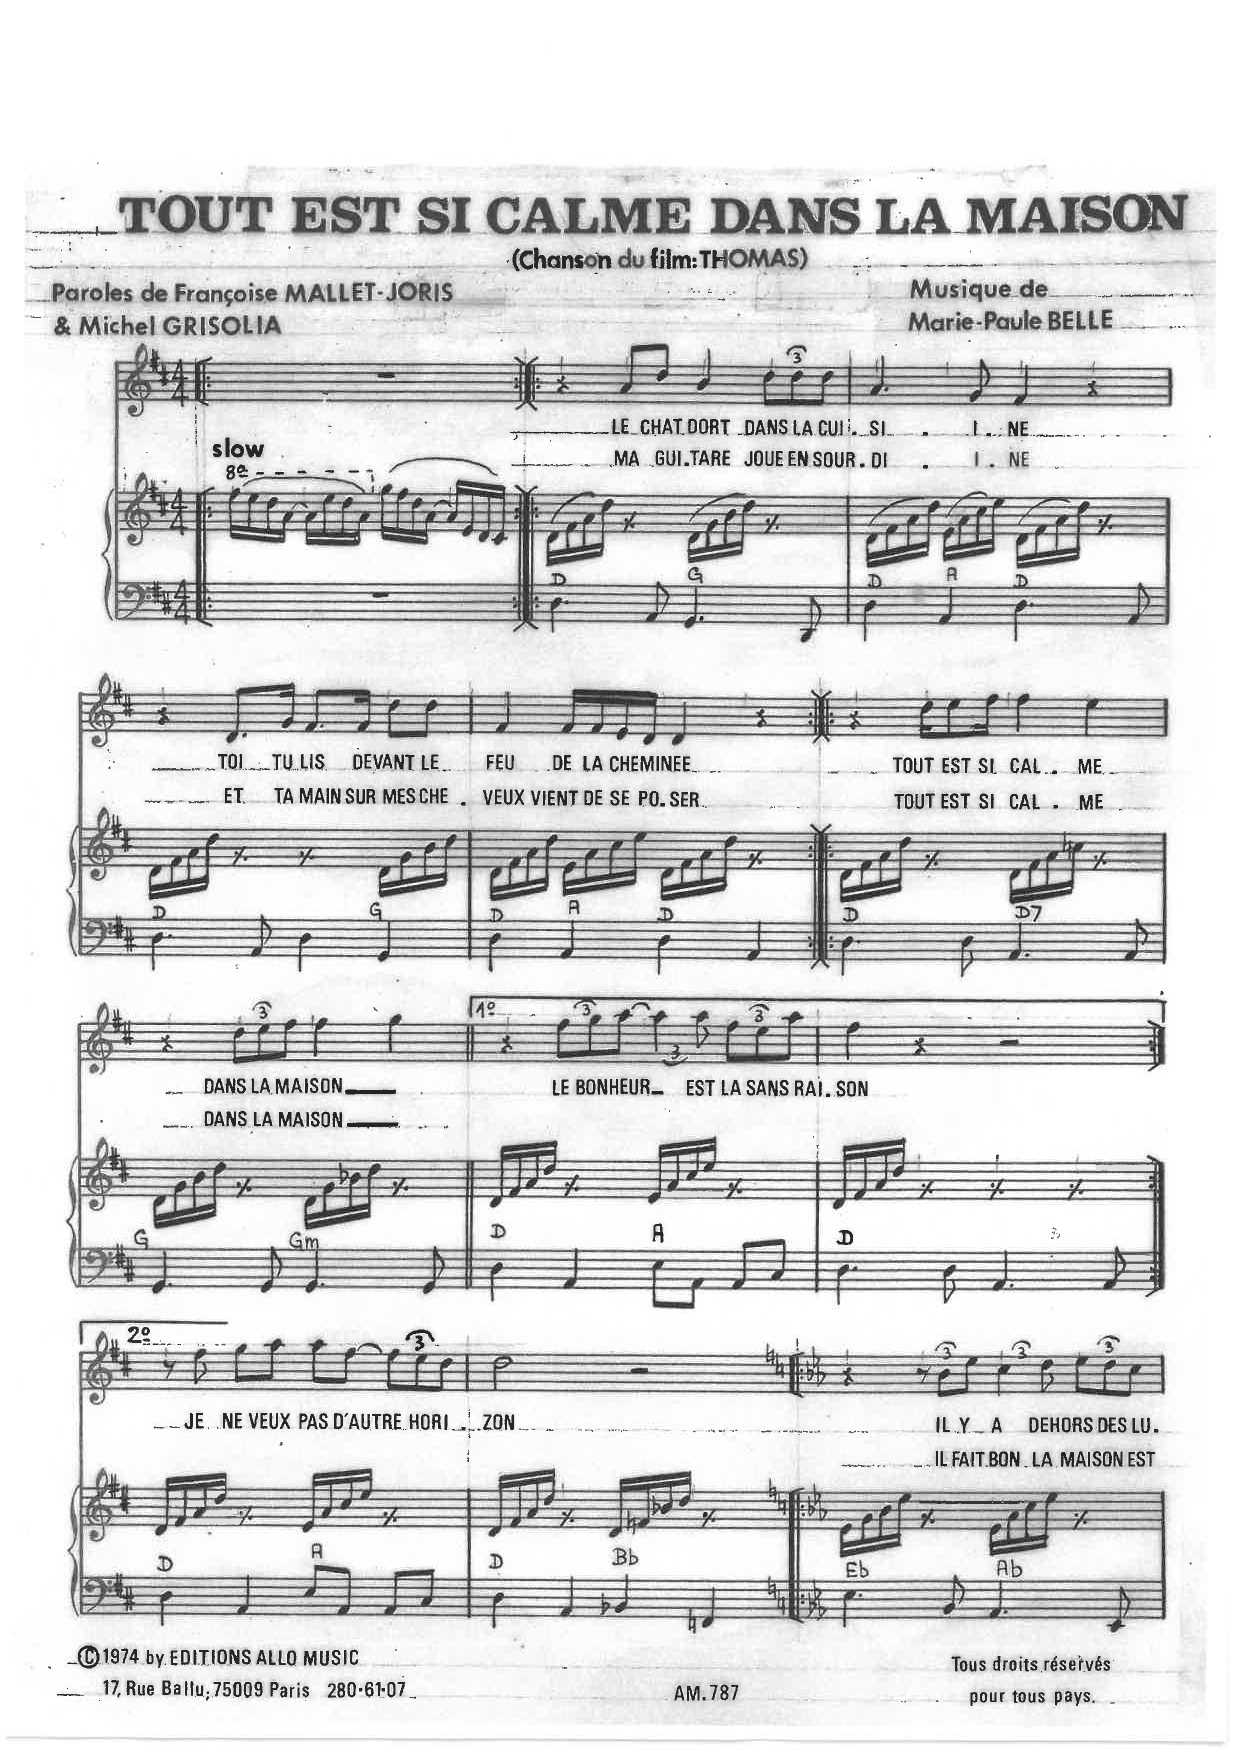 Michel Grisolia, Françoise Mallet-Joris, Marie Paule Belle Tout Est Si Calme Dans La Maison Sheet Music Notes & Chords for Piano & Vocal - Download or Print PDF